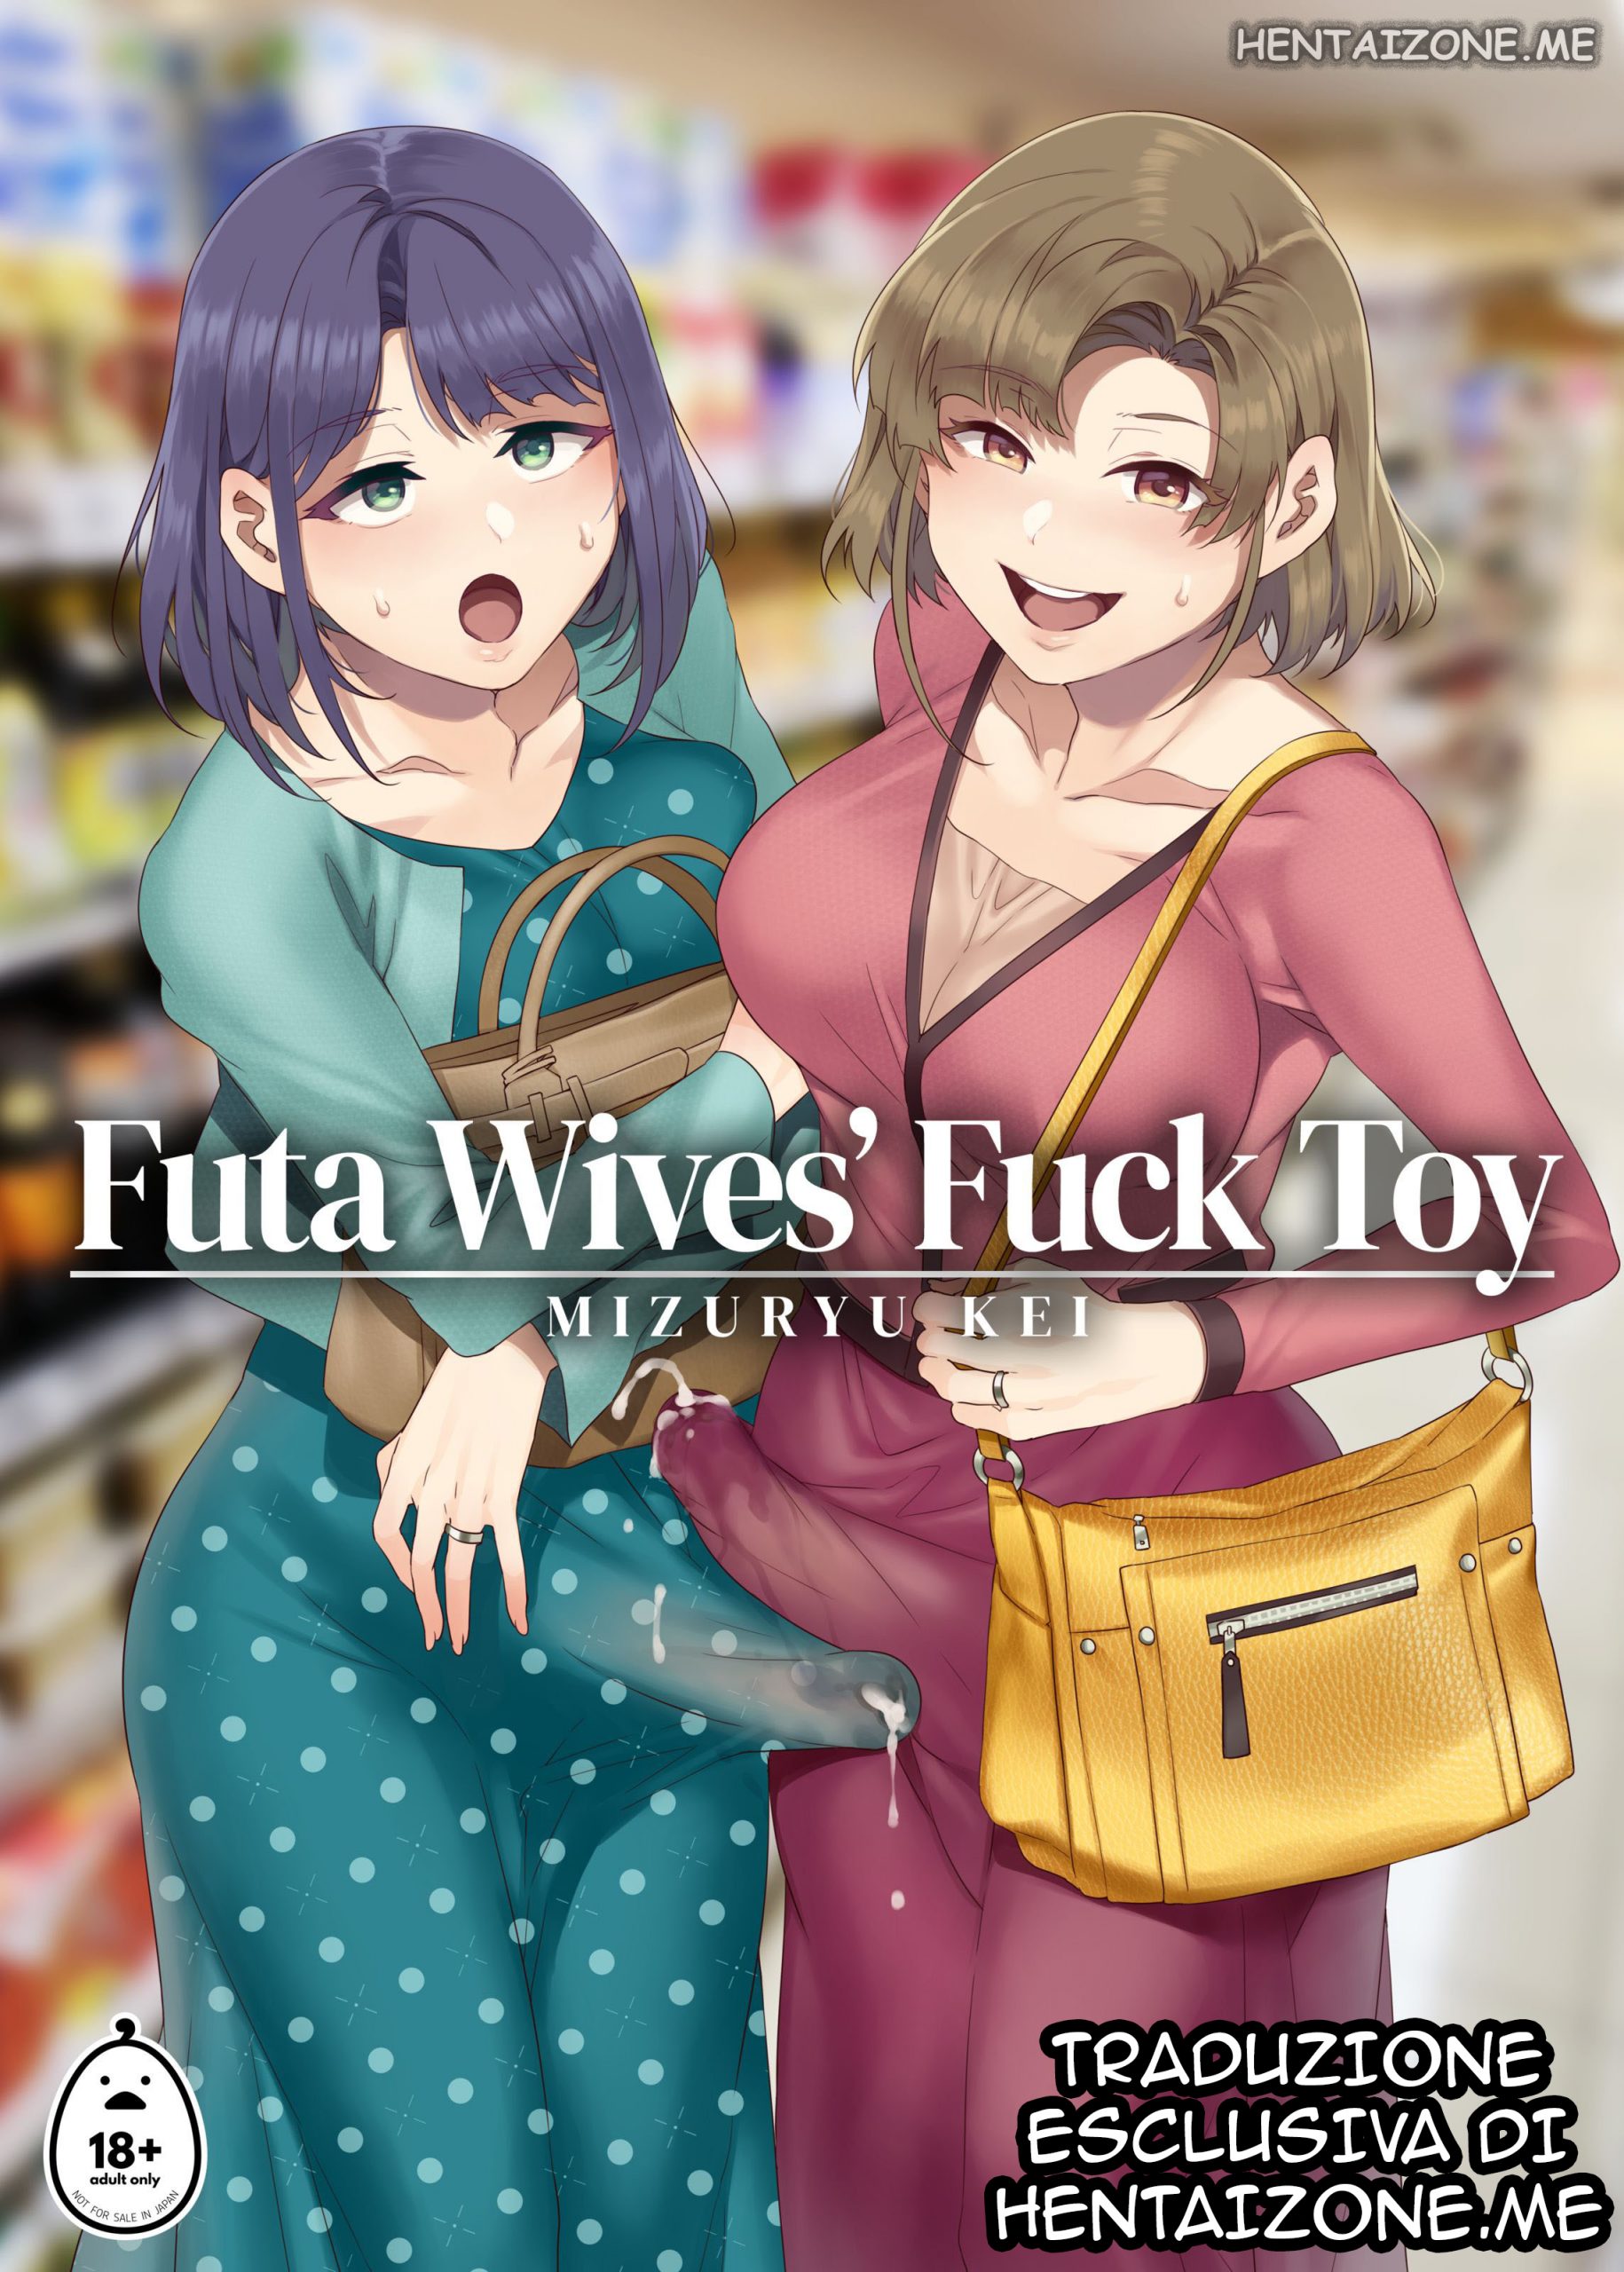 Giocattolo sessuale delle mogli futa